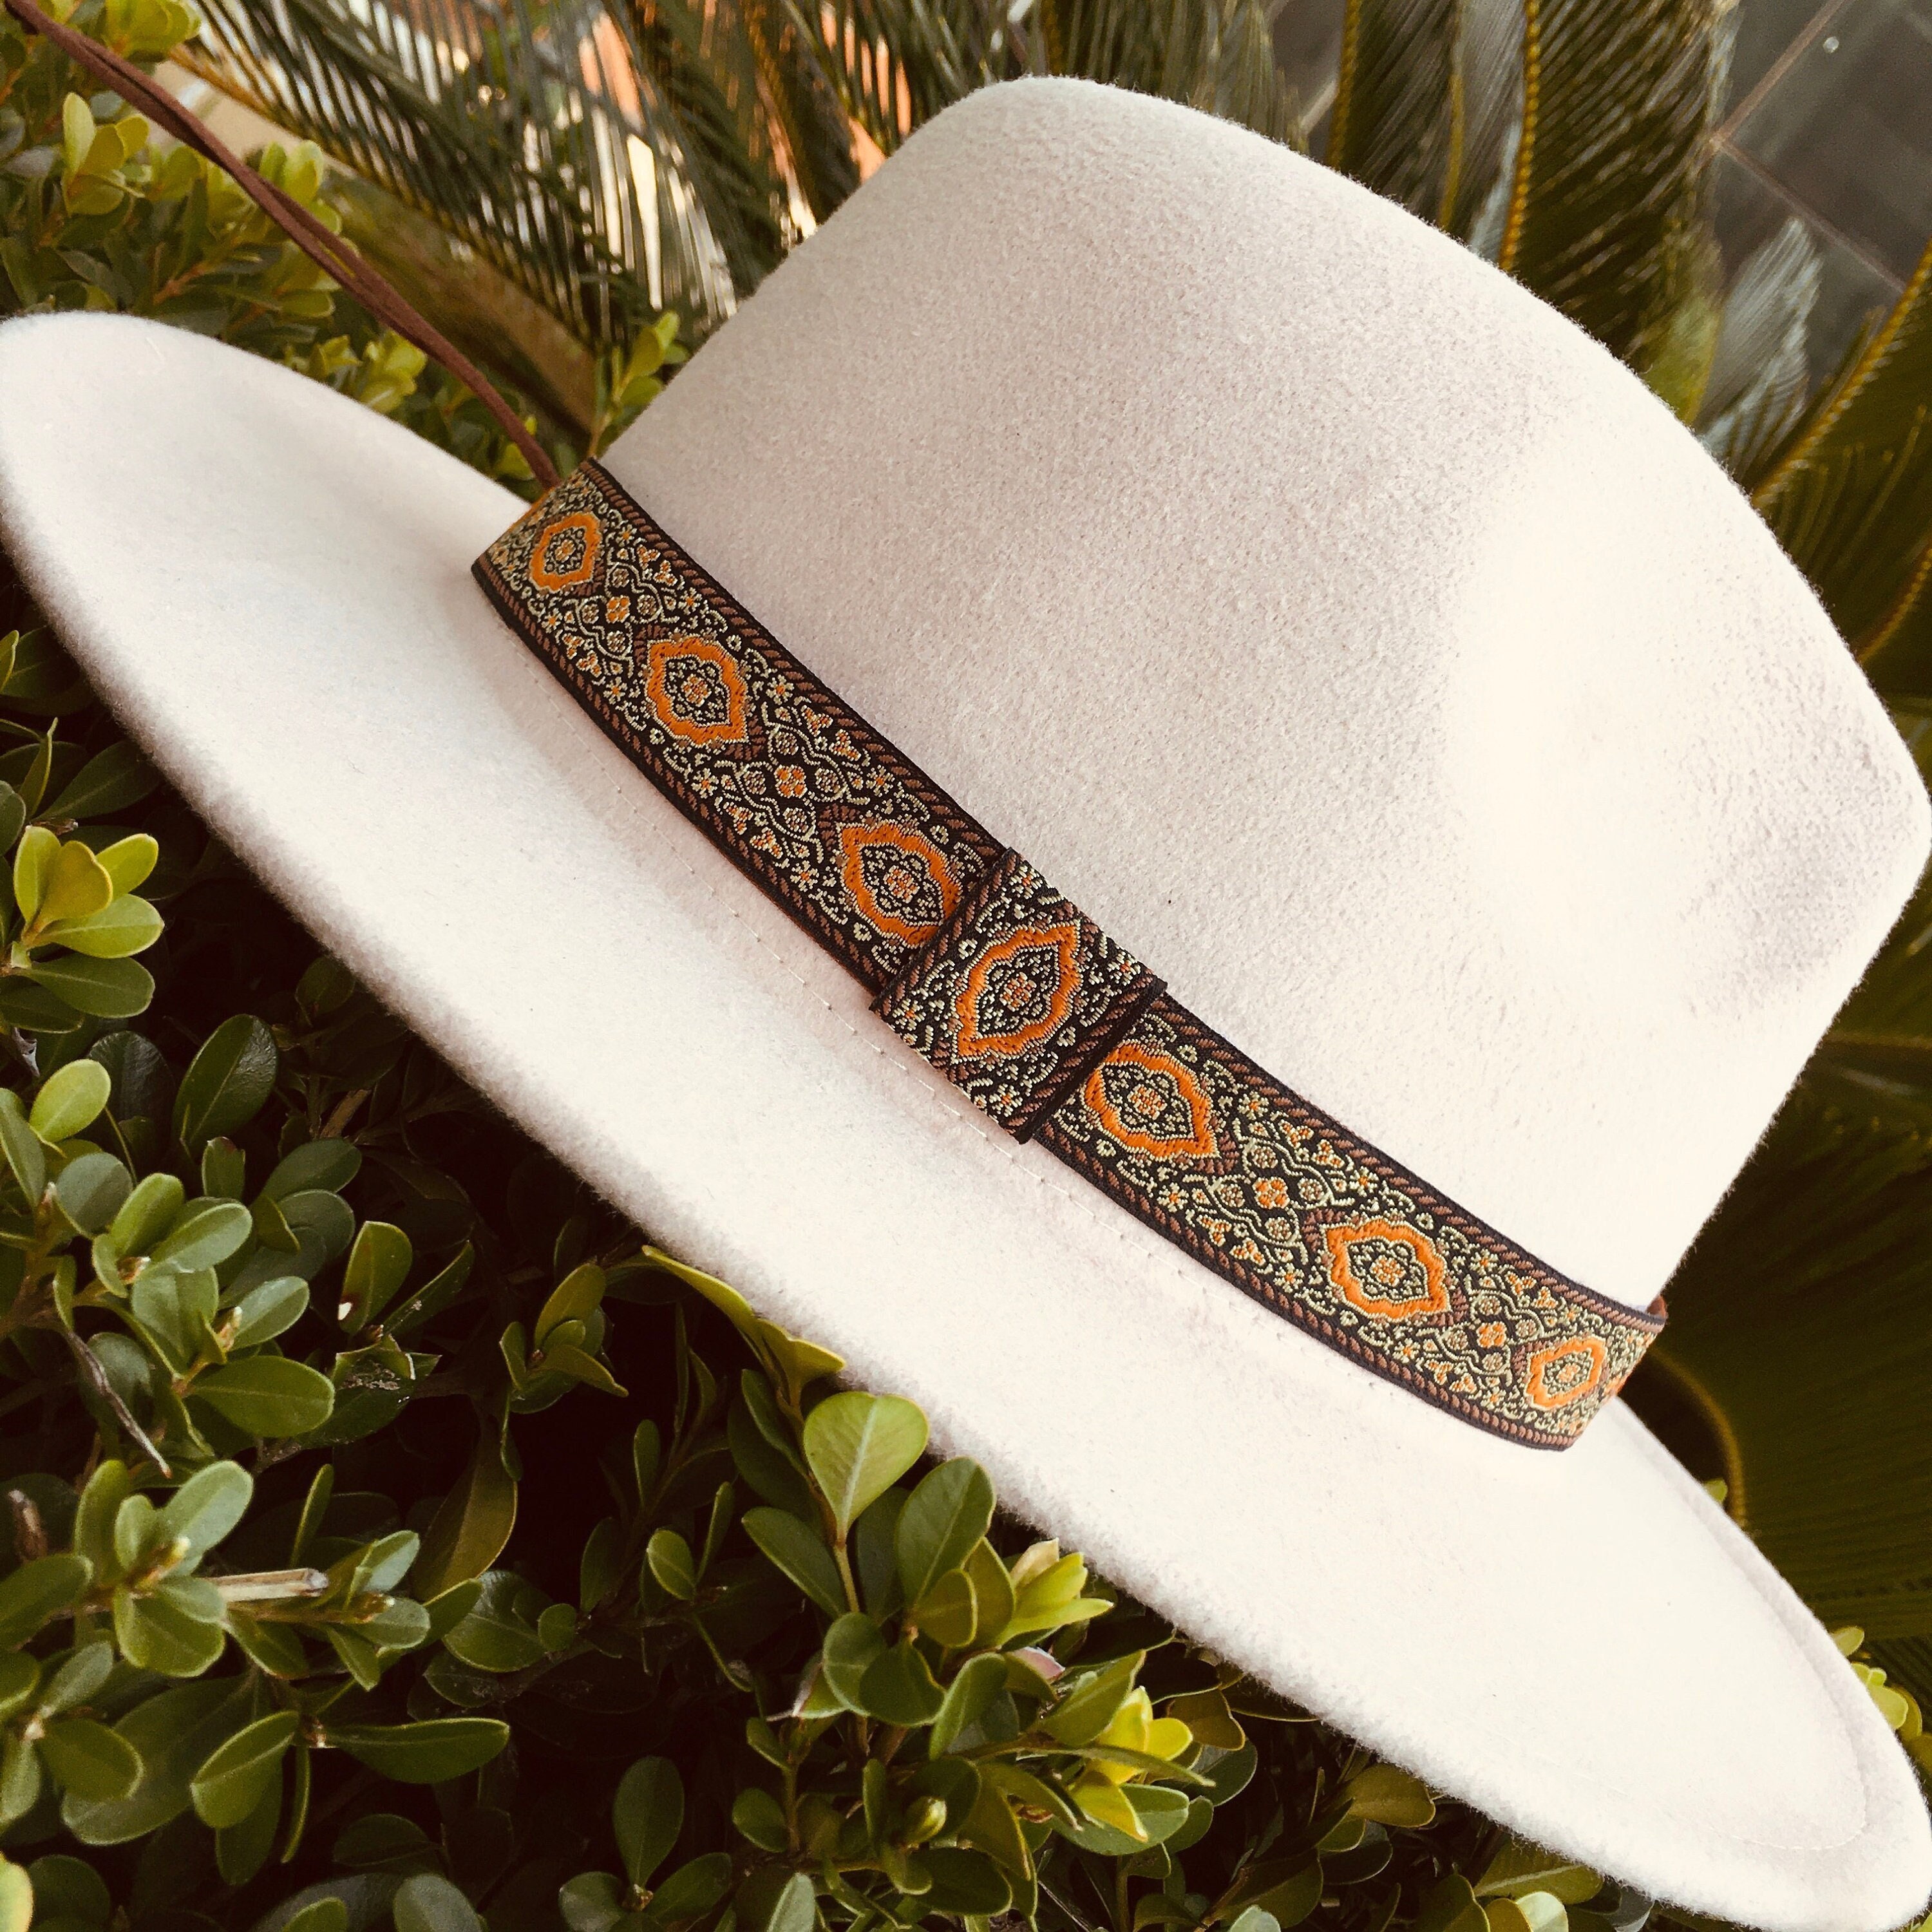 Cowboy Hat Bands for Men or Women, Adjustable Fedora Hat Band, Hatband Colors, Orange, Brown, Black, Cream, Unisex Western Hat Belt